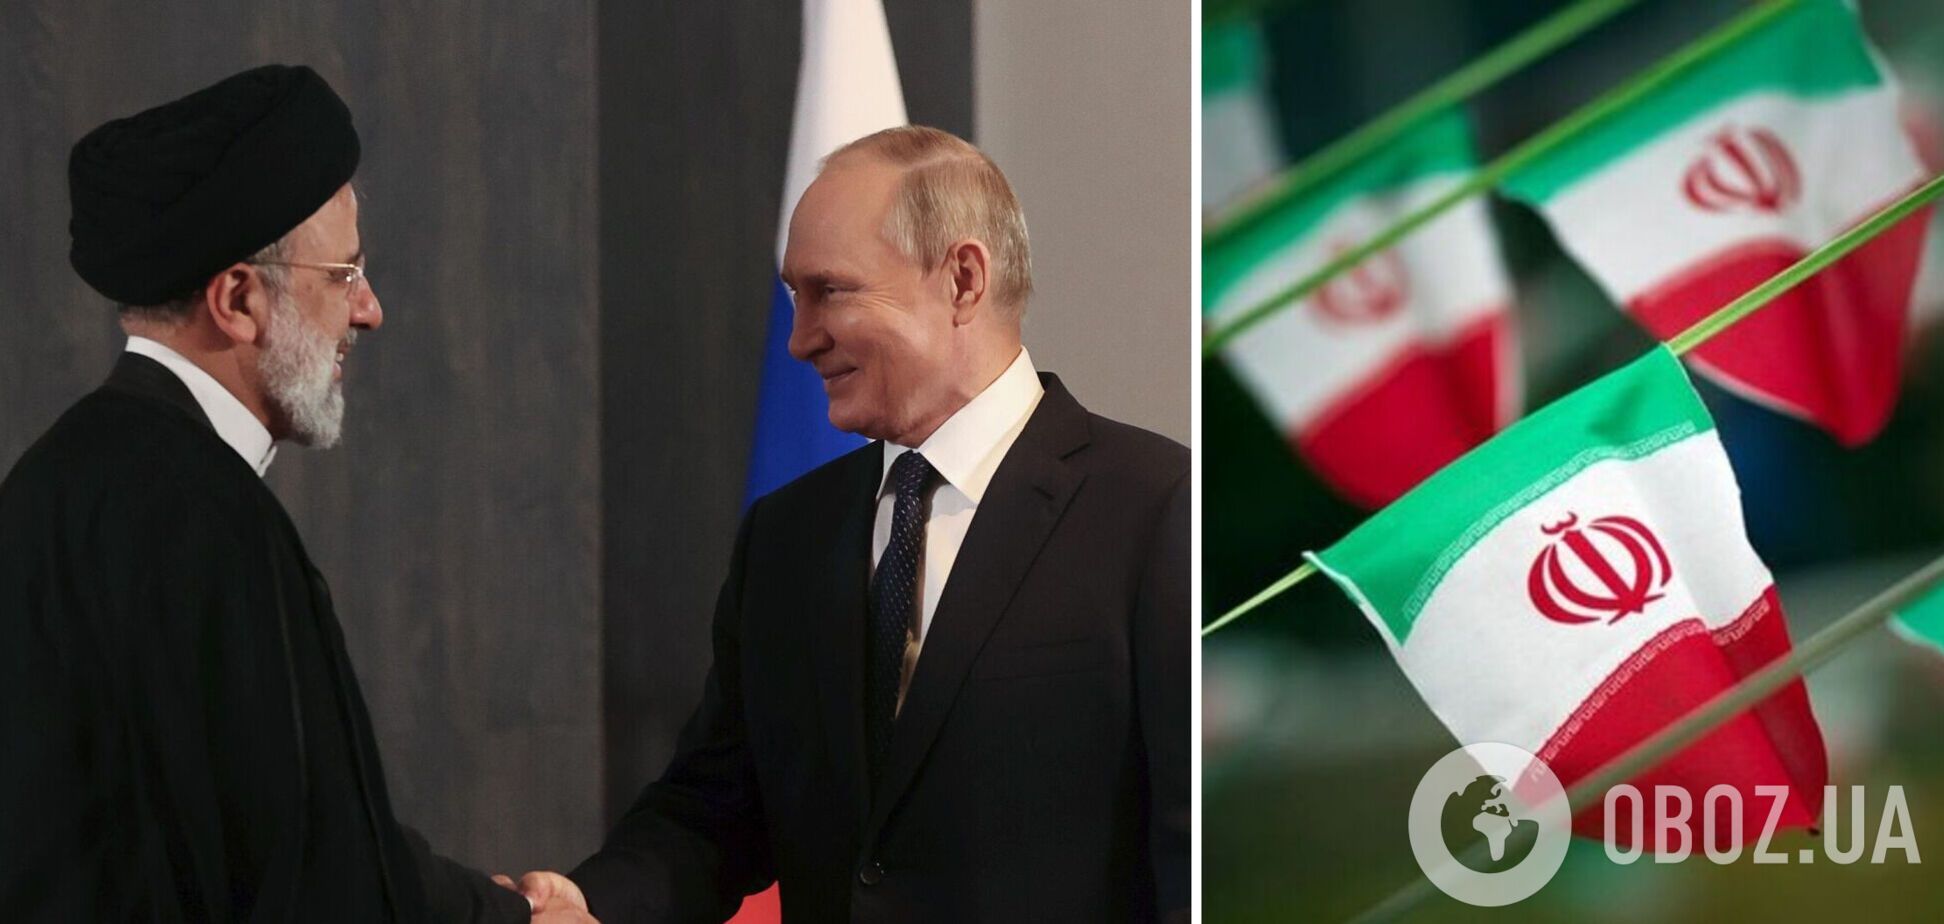 Іран в обмін на 'шахеди' отримує від Росії кіберзброю, зокрема для спостереження – The Wall Street Journal